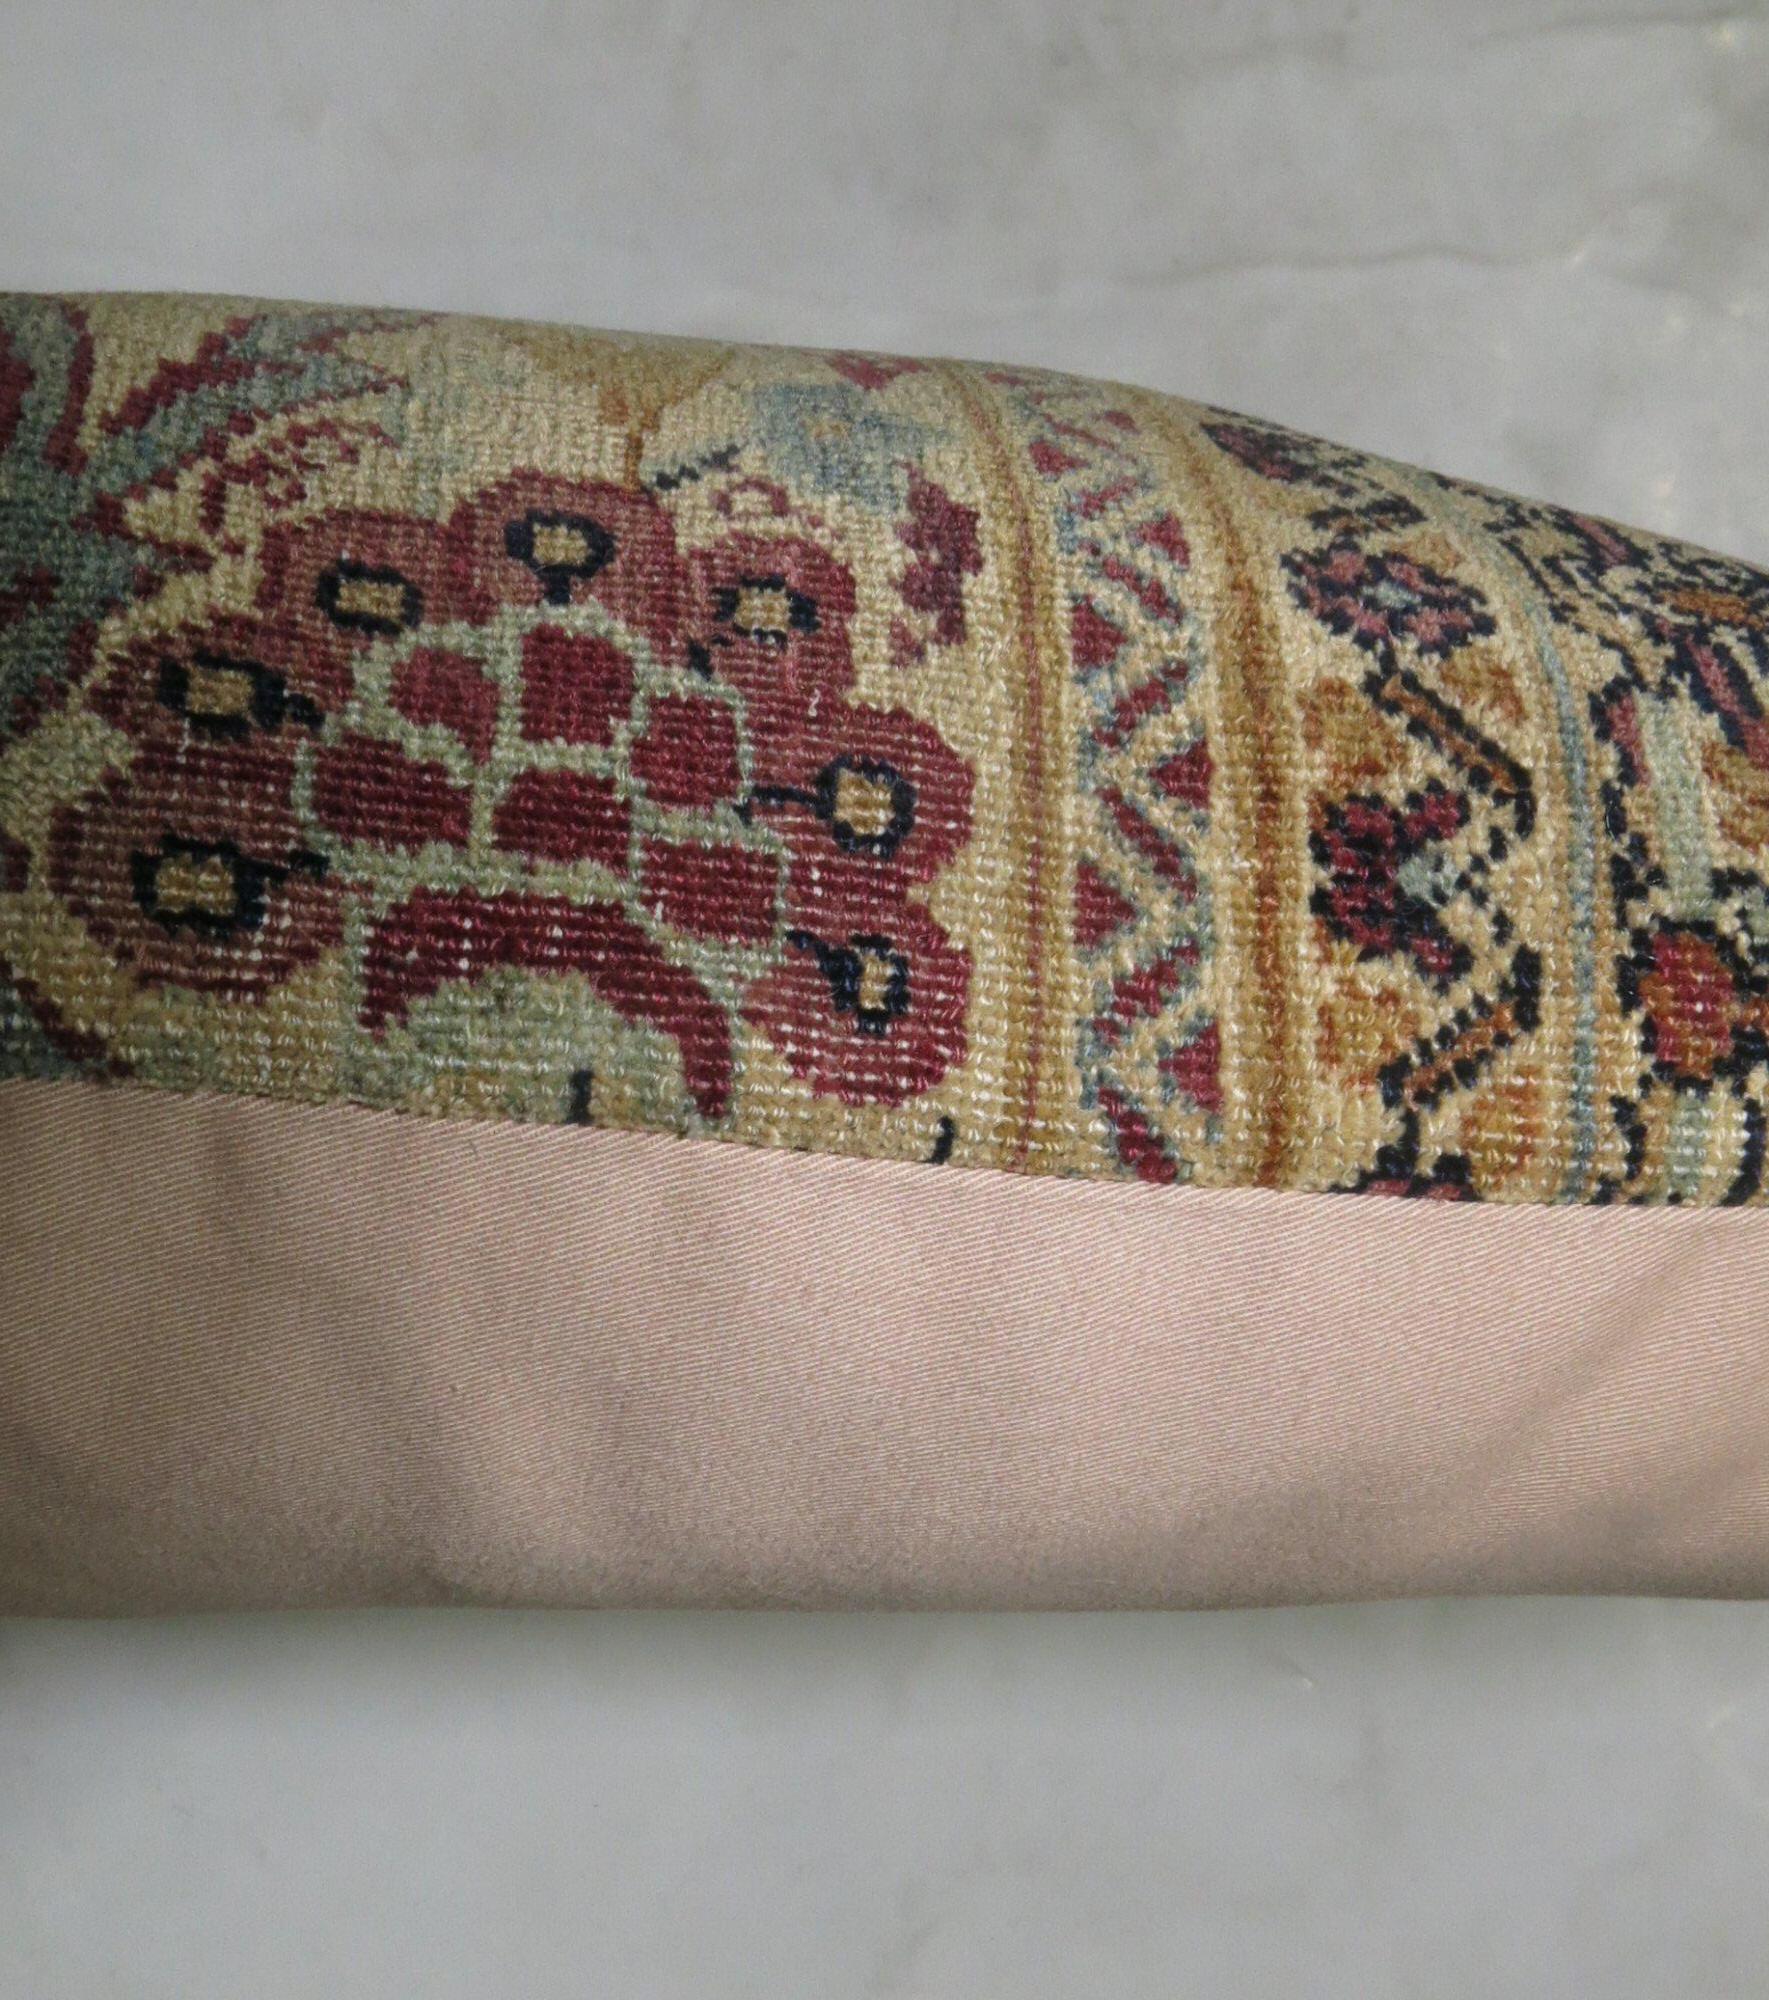 Kissen aus einem persischen Kerman-Teppich aus dem 19. Jahrhundert. Füllungseinsatz und Reißverschluss vorhanden

Maße: 13